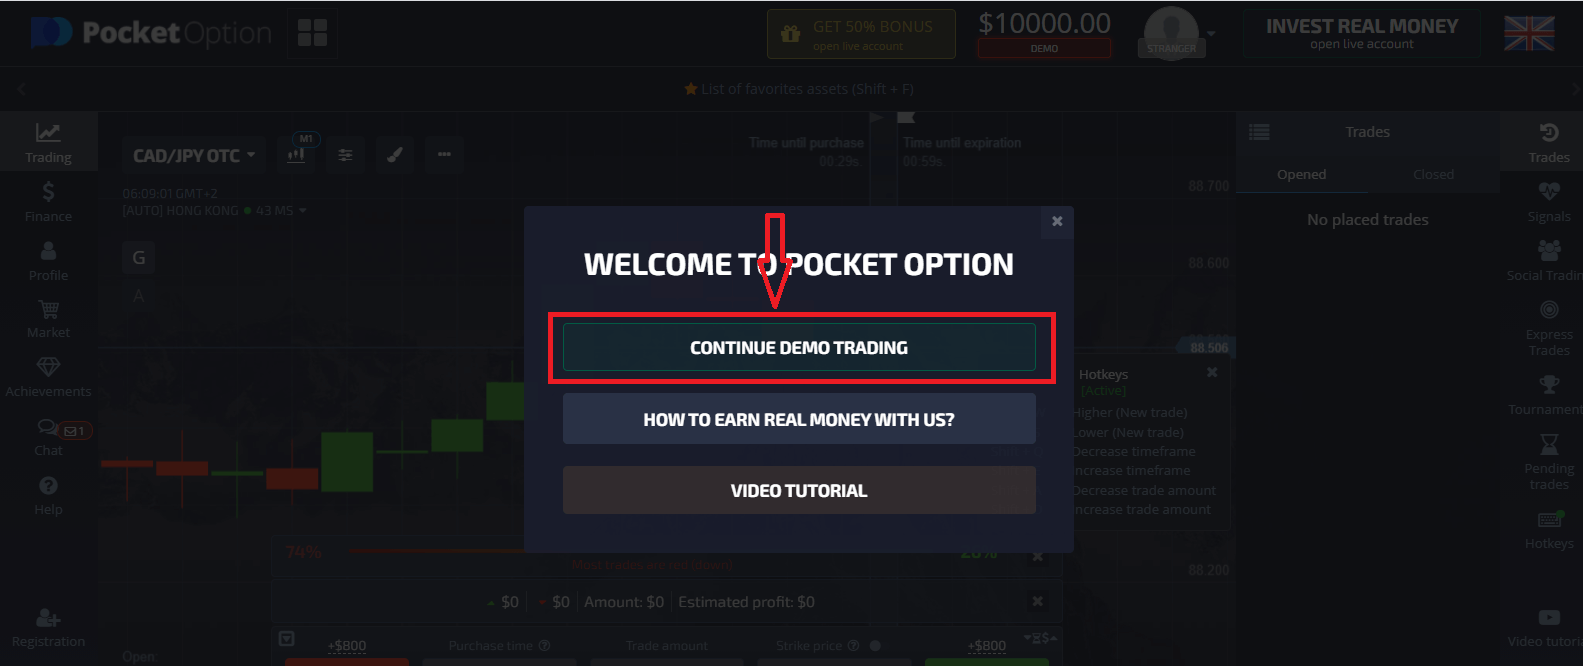 Comment s'inscrire et déposer de l'argent sur Pocket Option